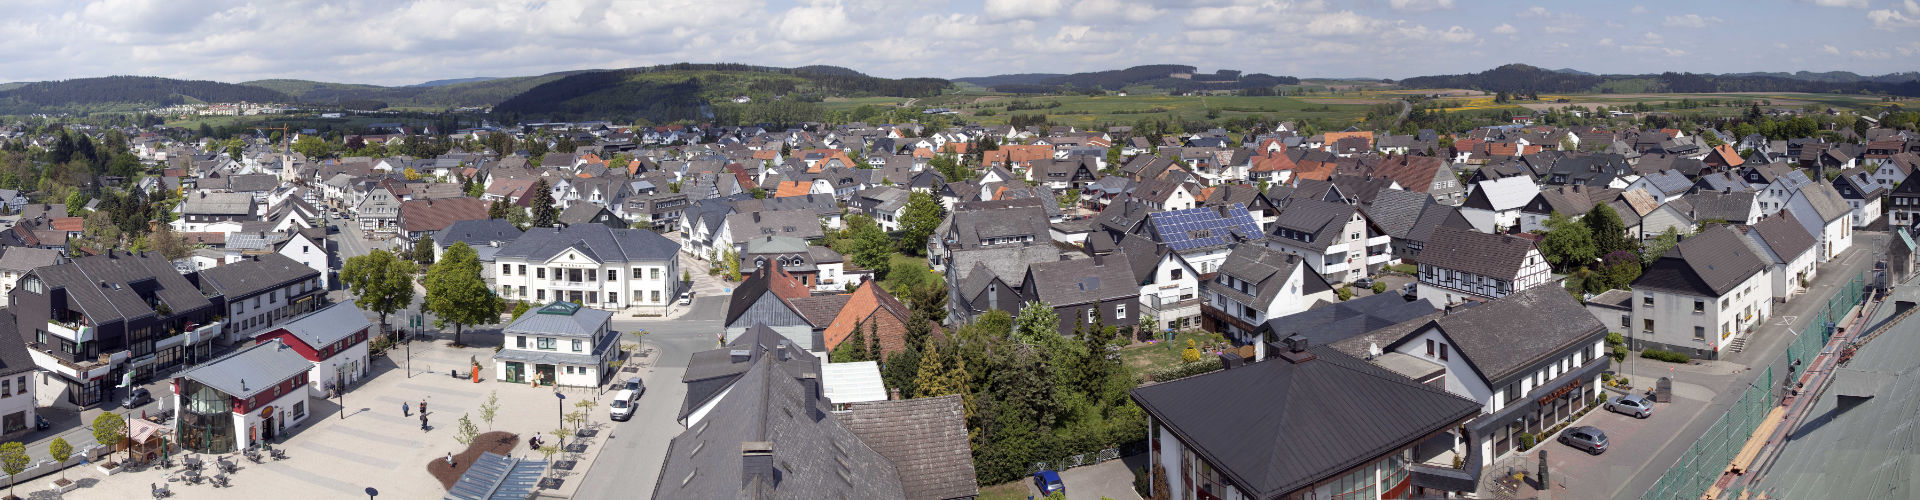 Panorama / Luftbild von Medebach